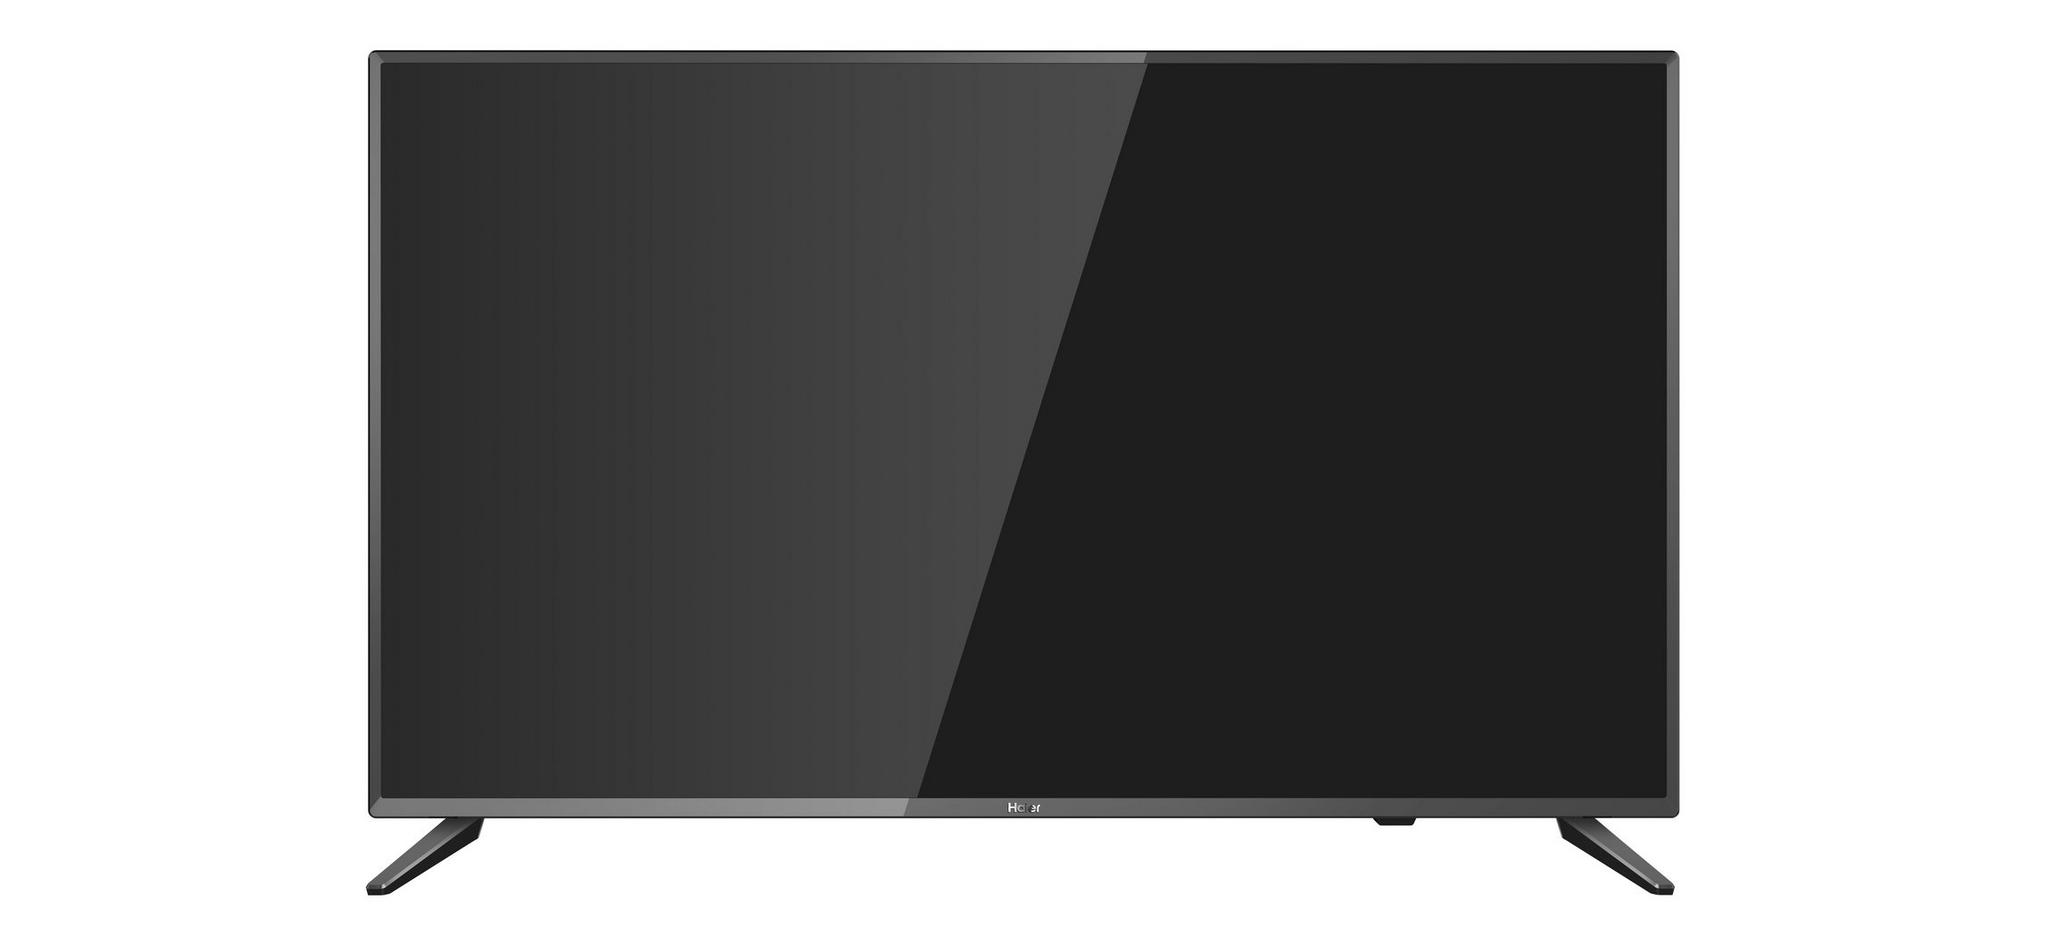 Haier 40 inch Full HD LED TV - LE40K6000